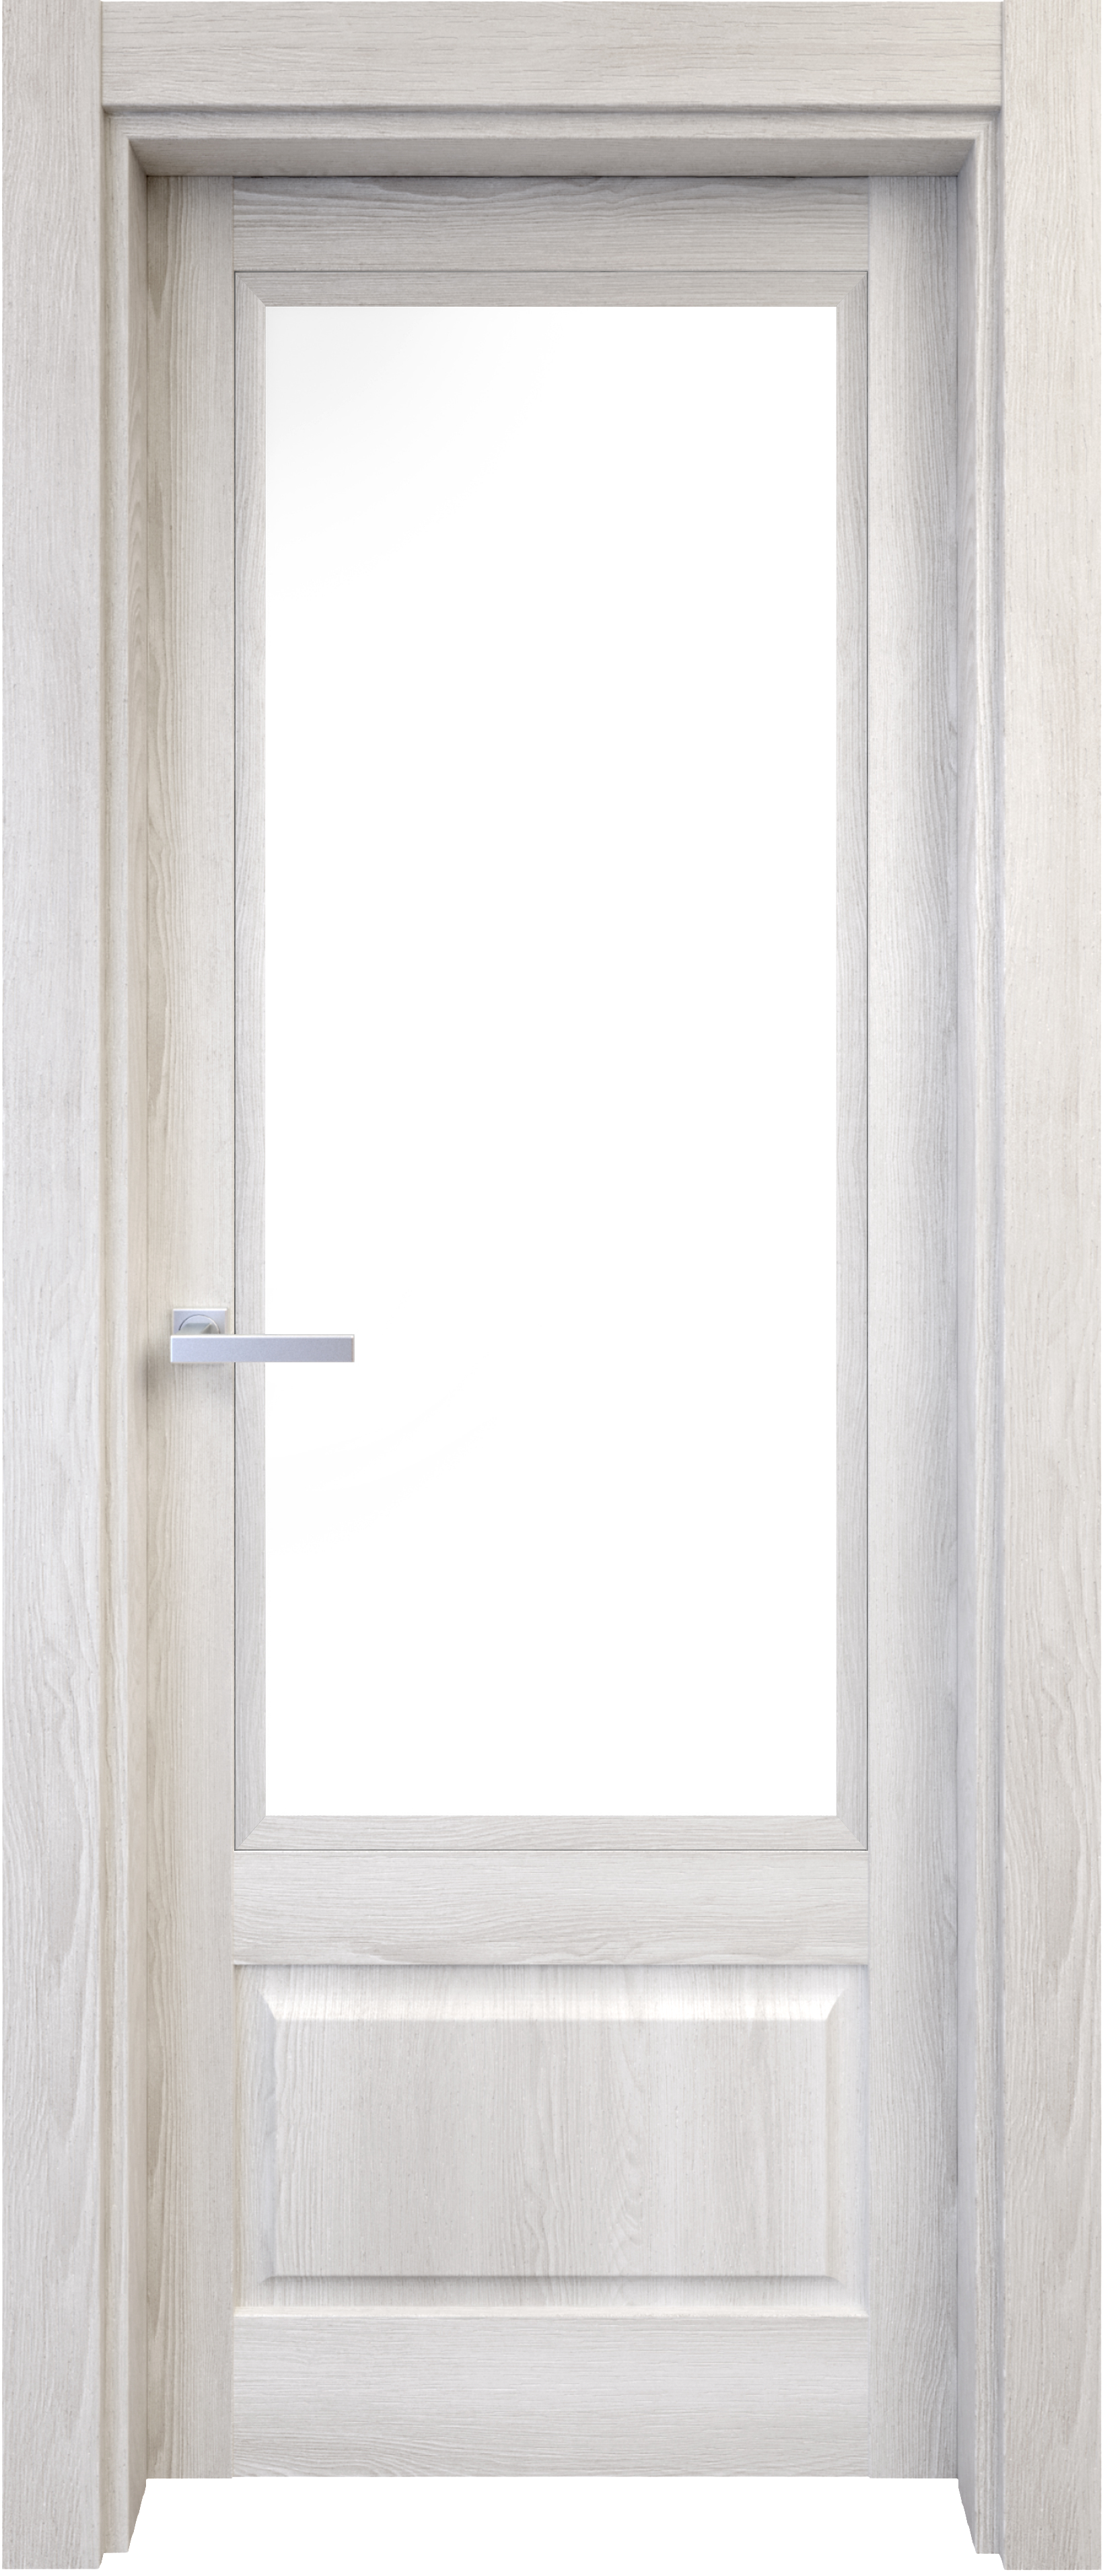 Puerta abatible sofia blanca line plus con cristal blanco izquierda de 62.5